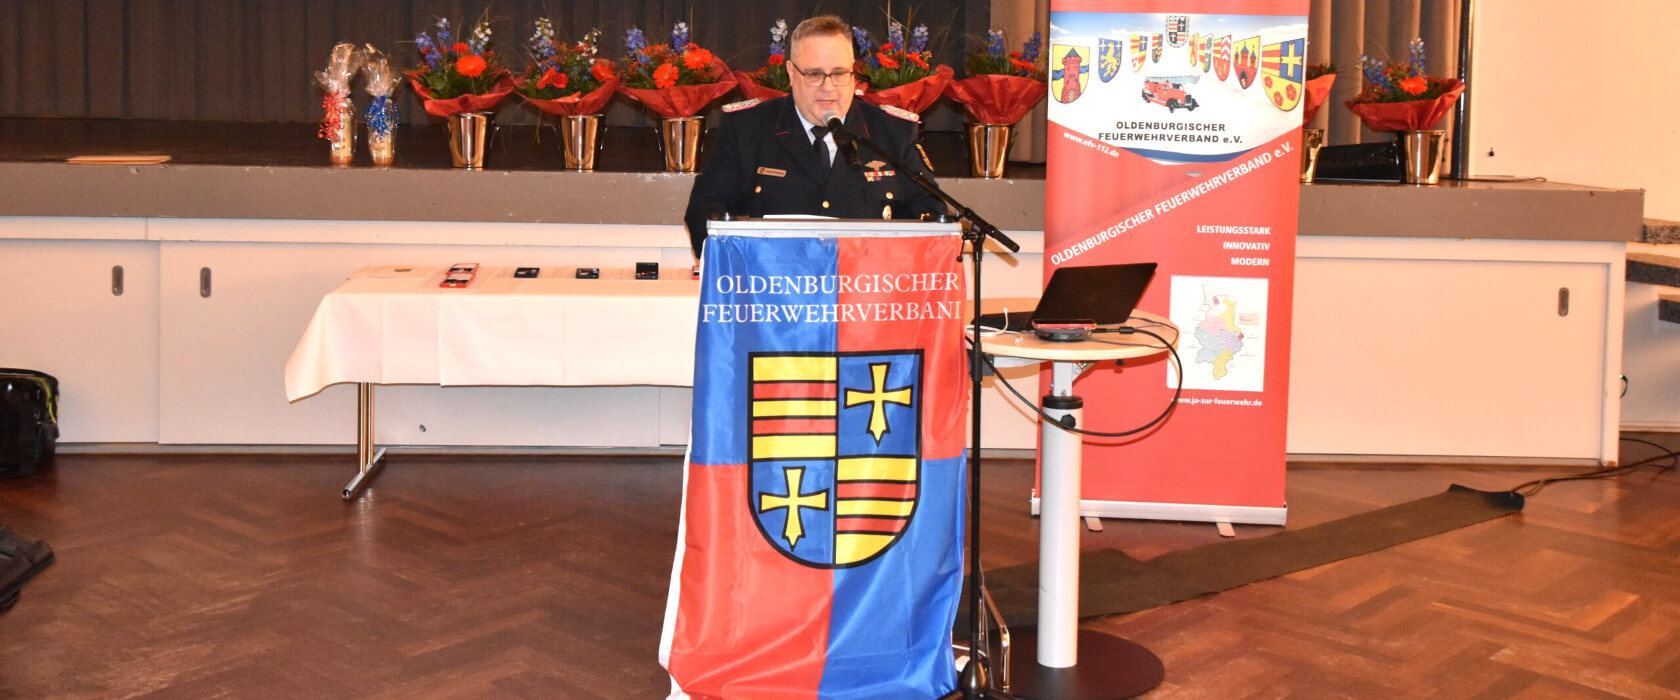 Vertreterversammlung des Oldenburgischen Feuerwehrverbandes